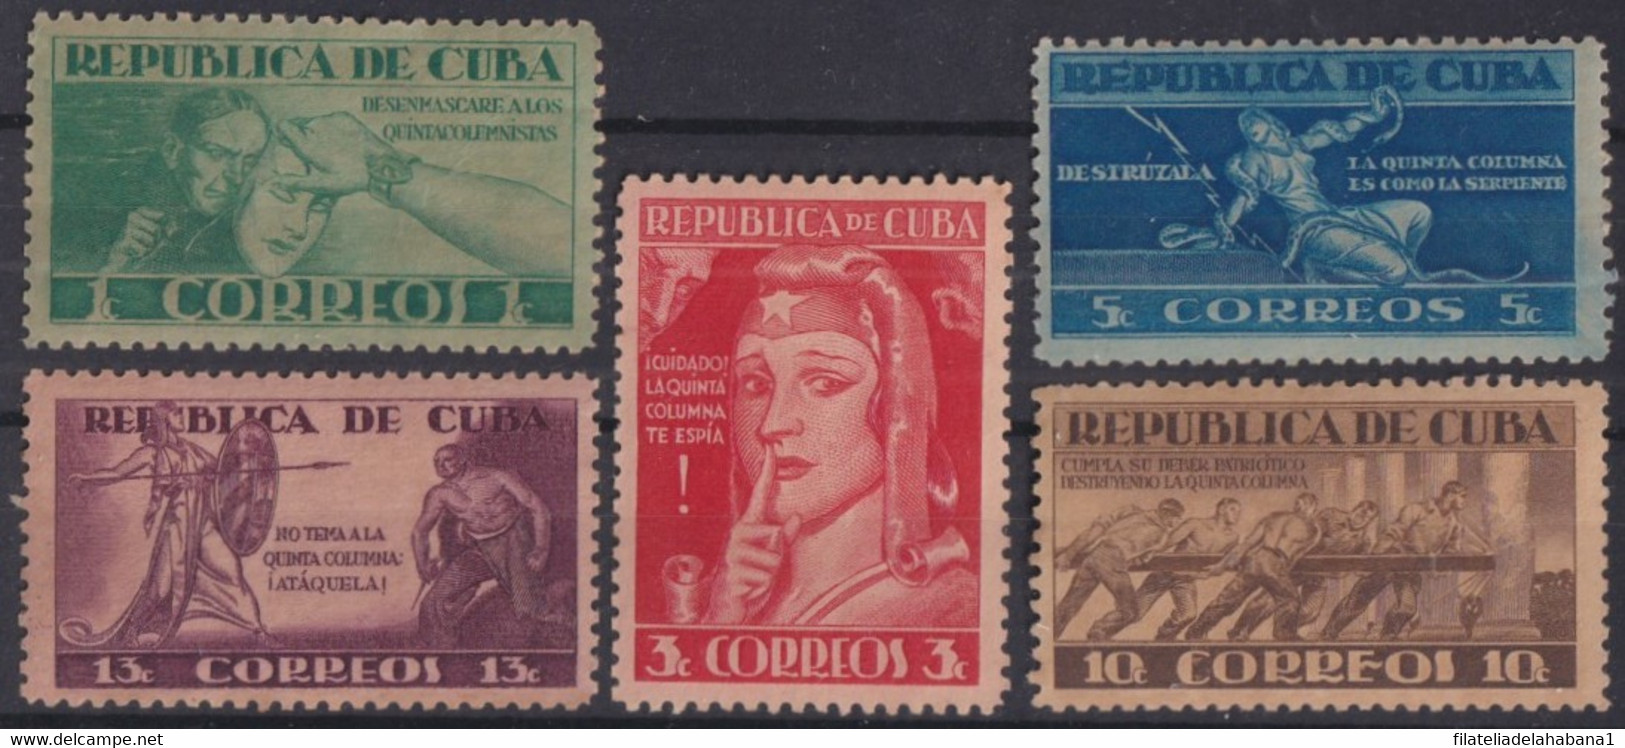 1943-140 CUBA REPUBLICA 1943 QUINTA COLUMNA SPIES WWII ORIGINAL GUM. - Unused Stamps